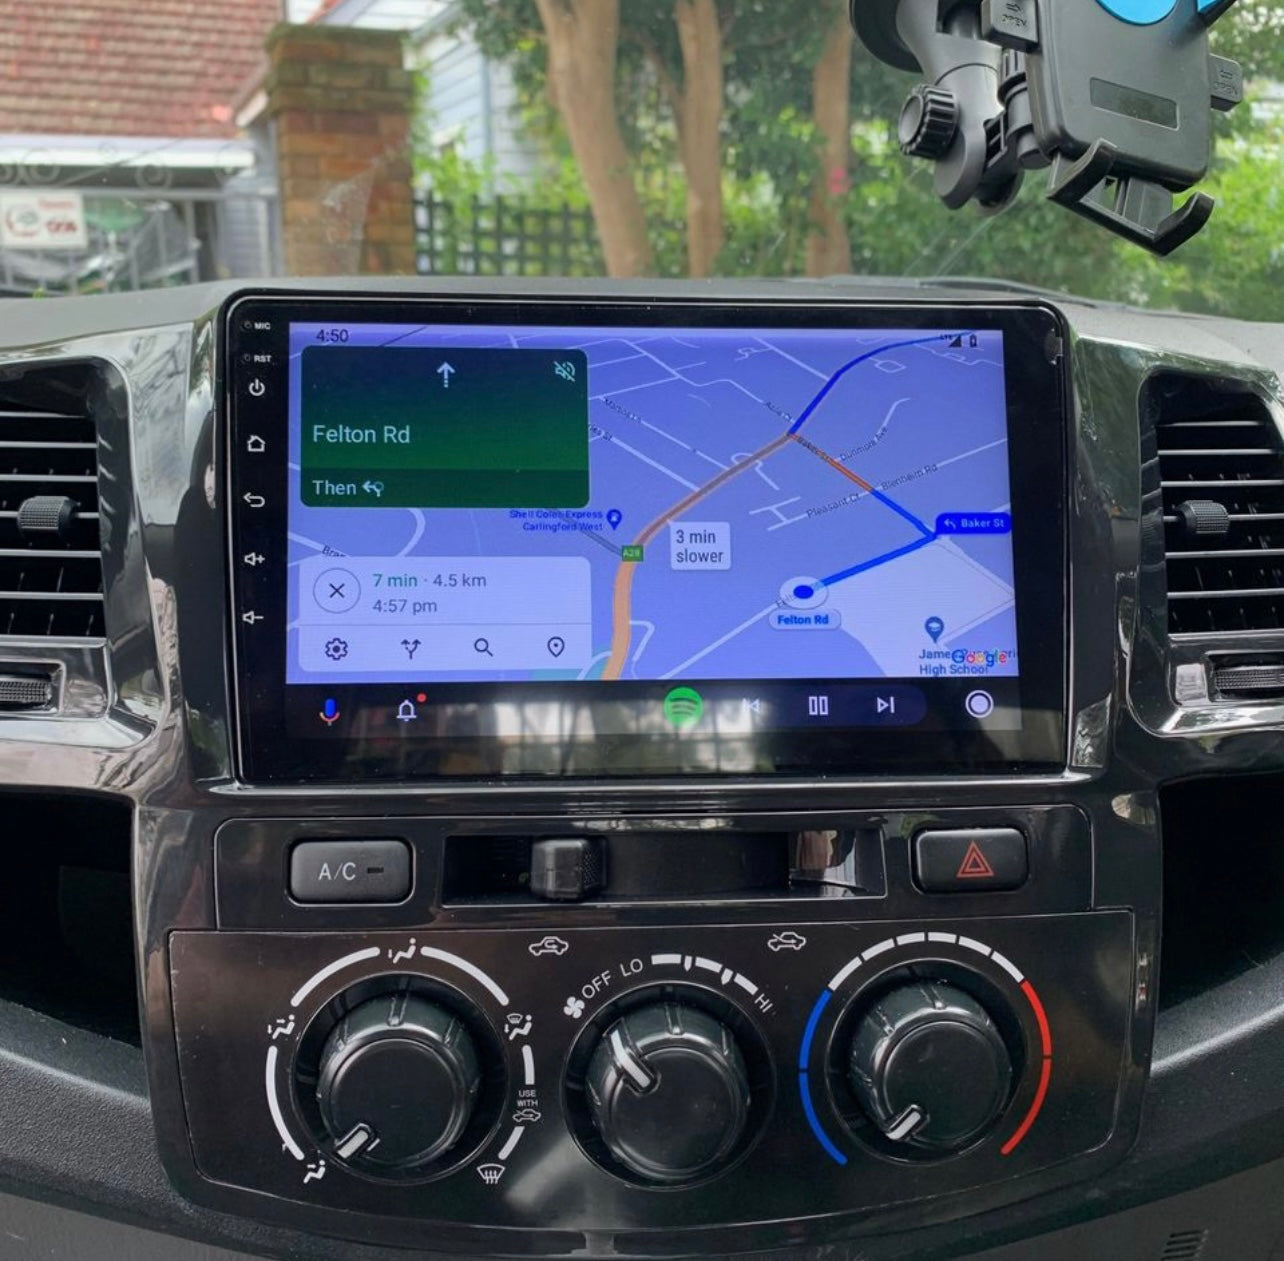 Toyota Hilux N70 2006-2015 Apple CarPlay and Android Auto Plug and Plug Head Unit Upgrade Kit